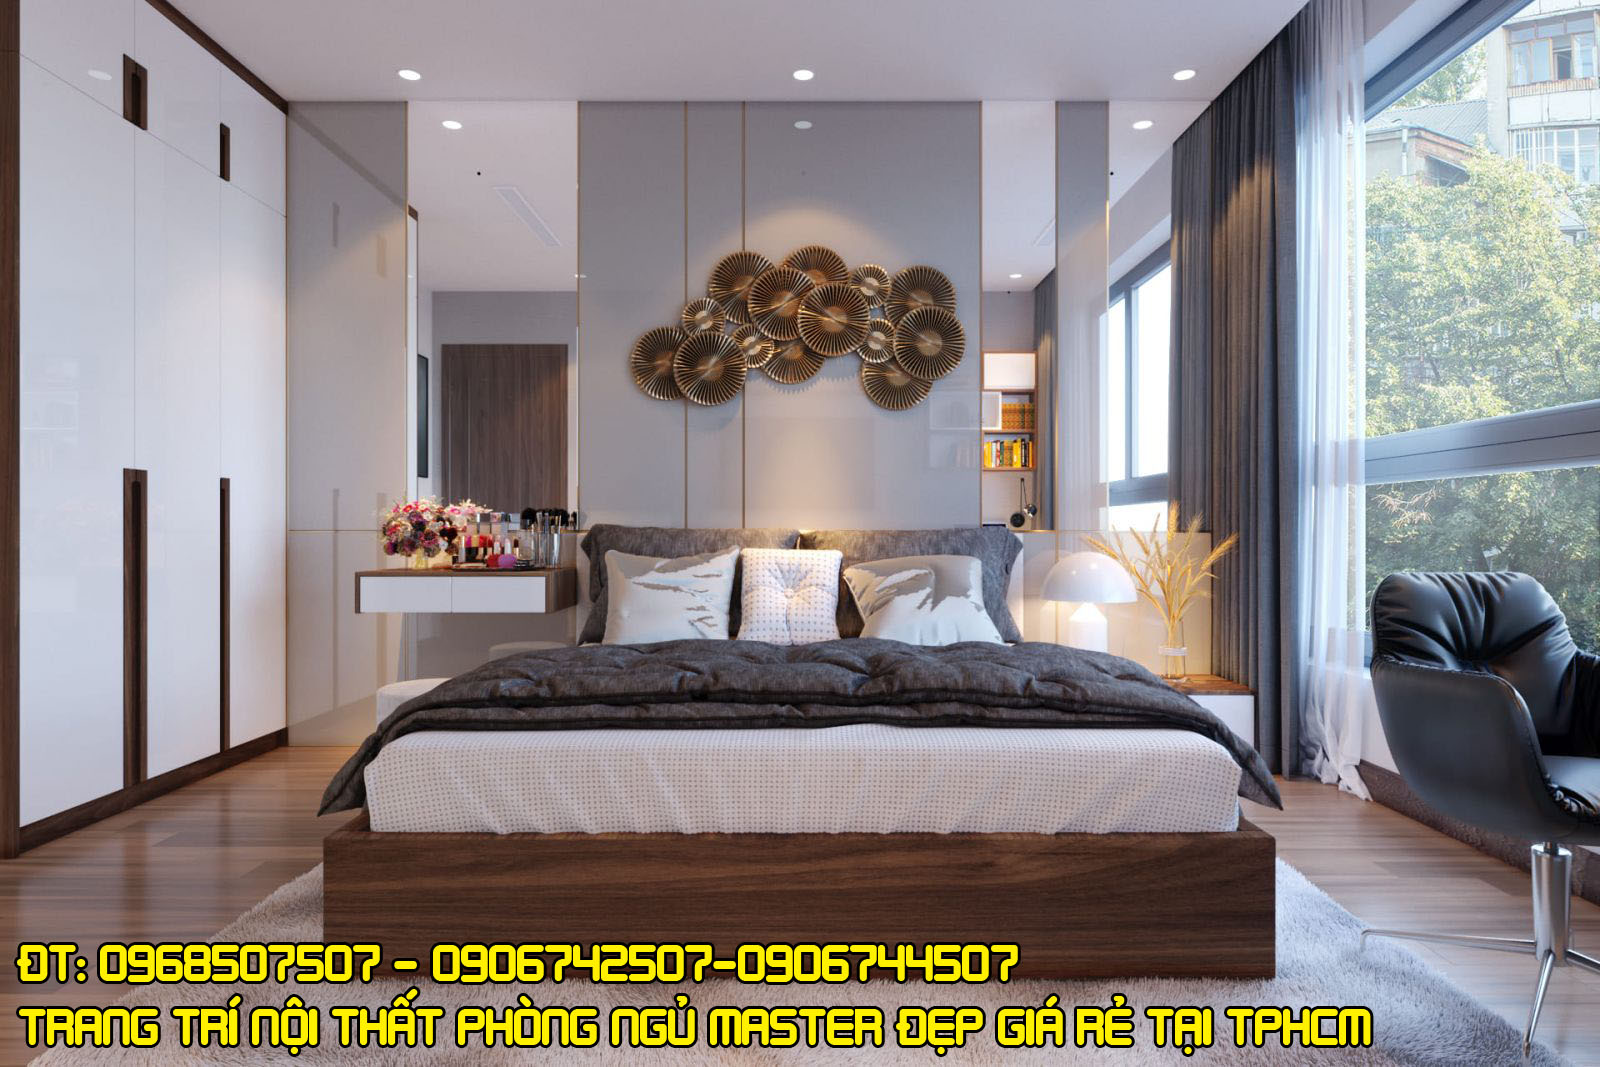 Đơn vị thi công nội thất phòng ngủ master giá rẻ, đẹp, chất lượng nhất tại TPHCM